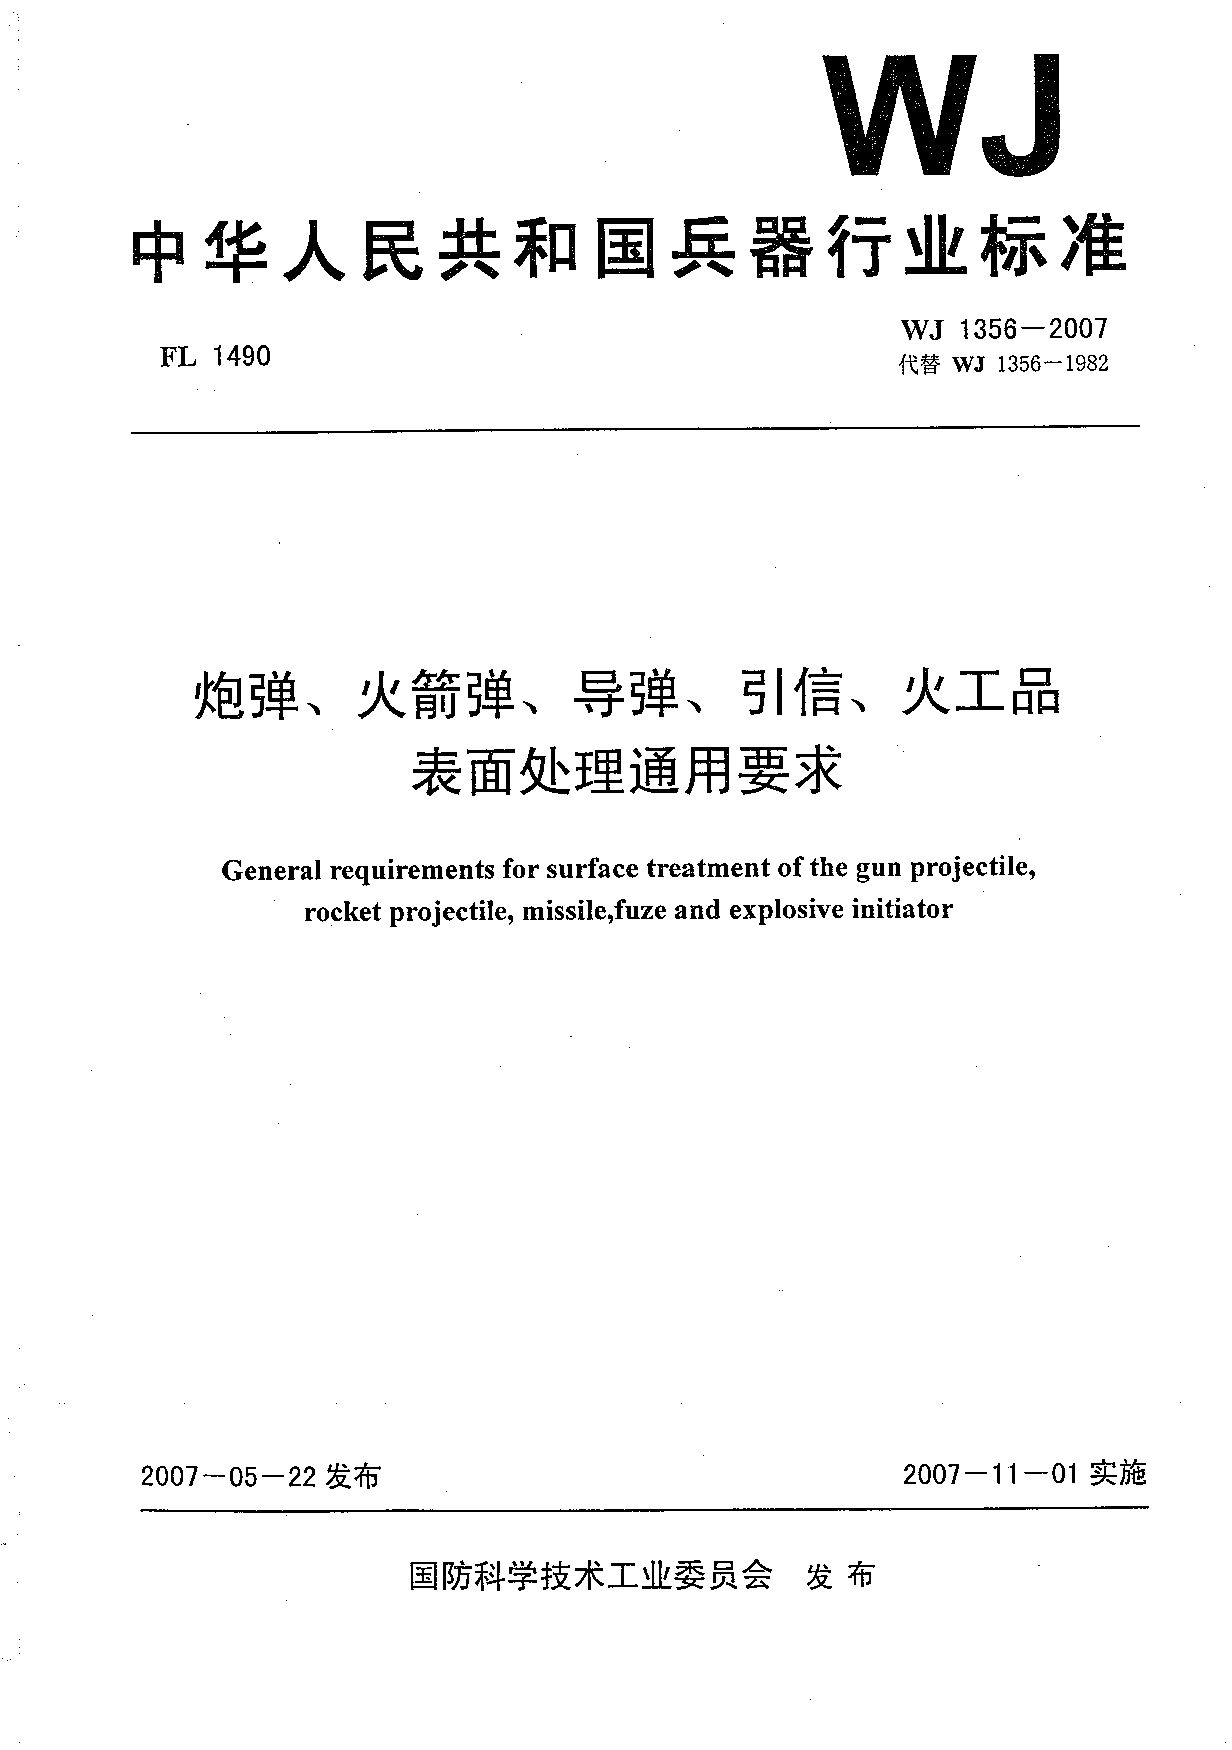 WJ 1356-2007封面图